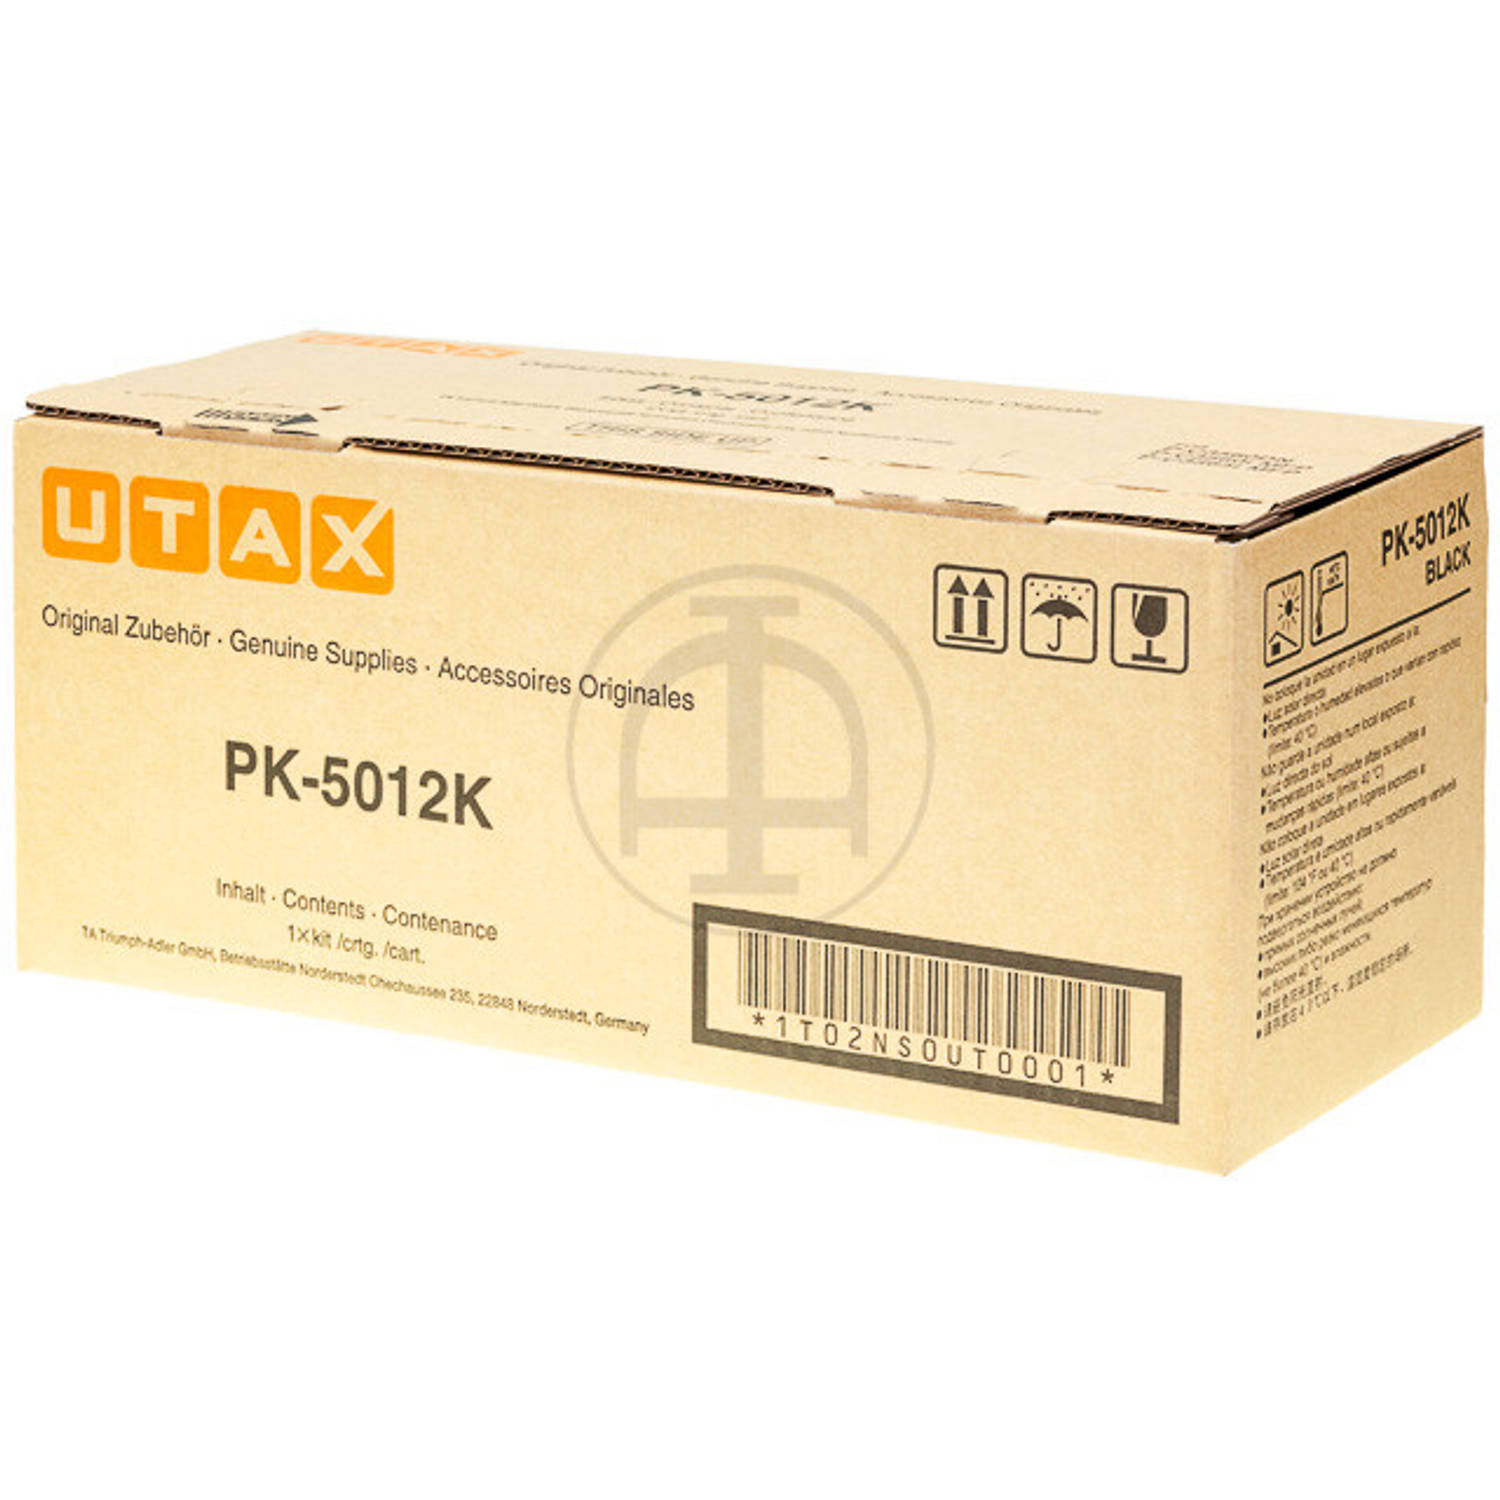 1T02NS0UT0 UTAX PK5012K P-C toner black